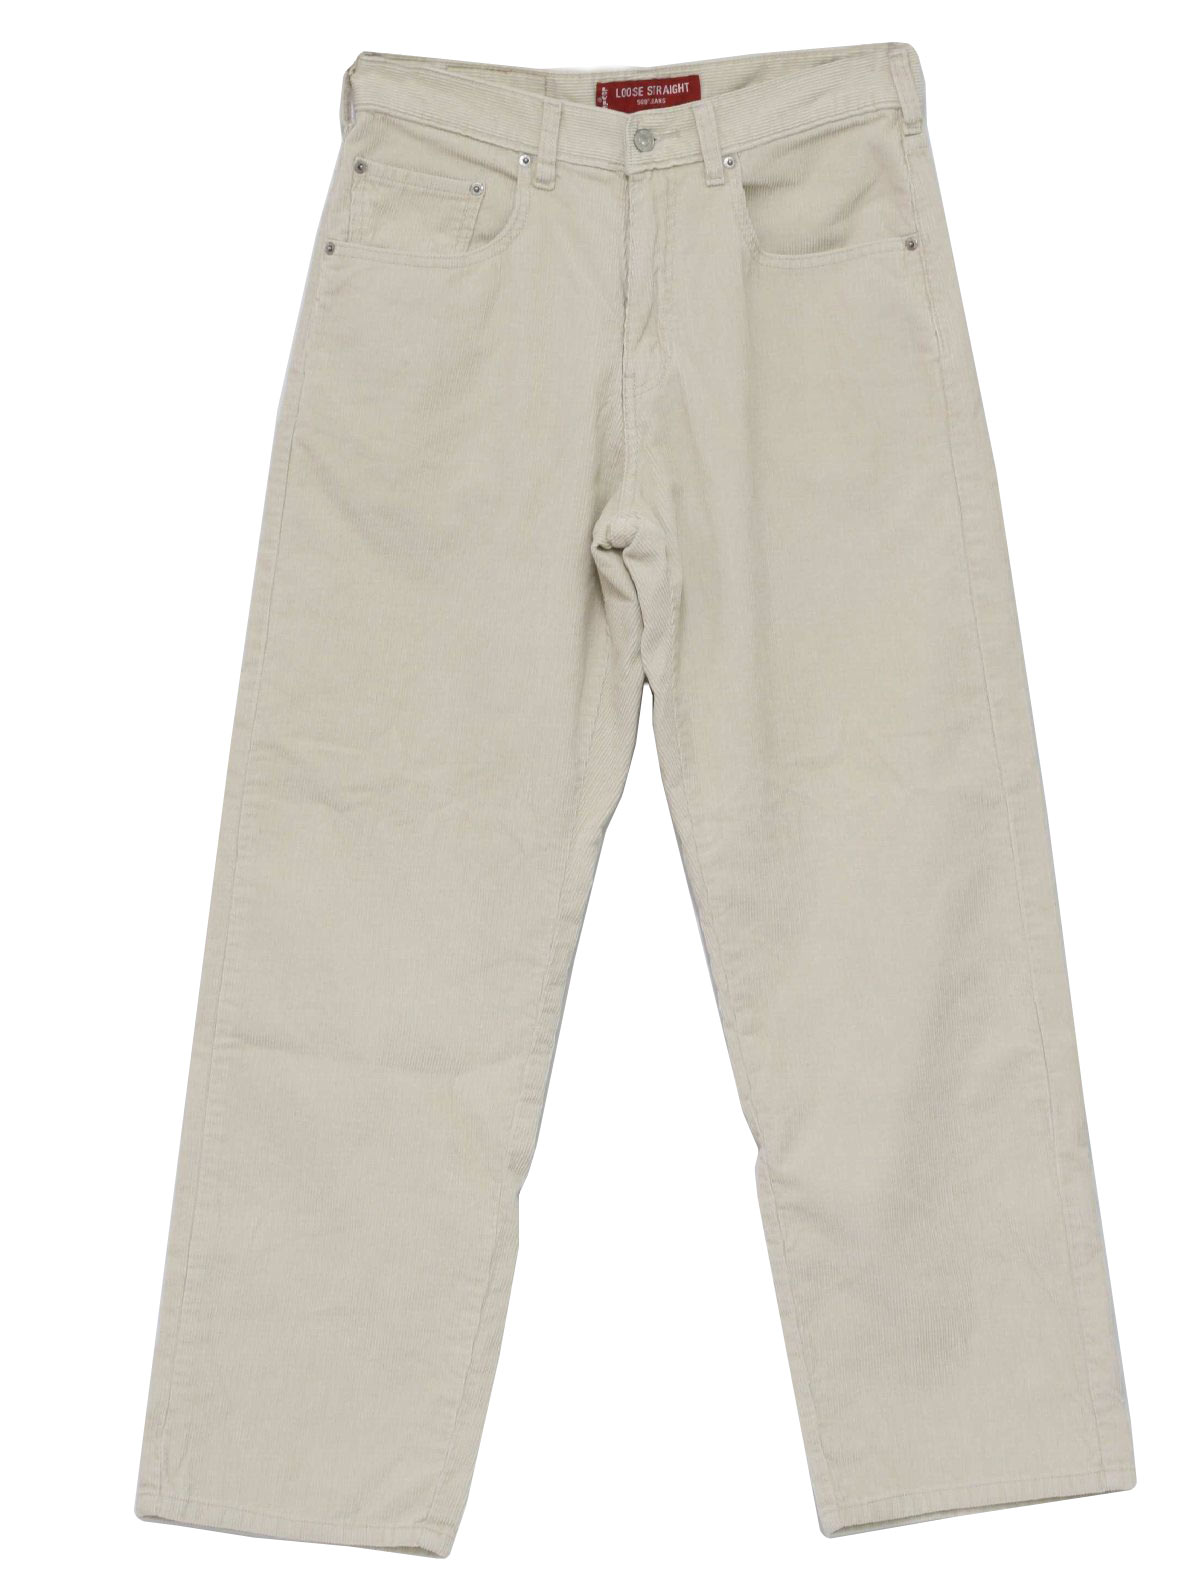 1990s Vintage Pants: 90s -Levis- Mens off white pin wale cotton ...